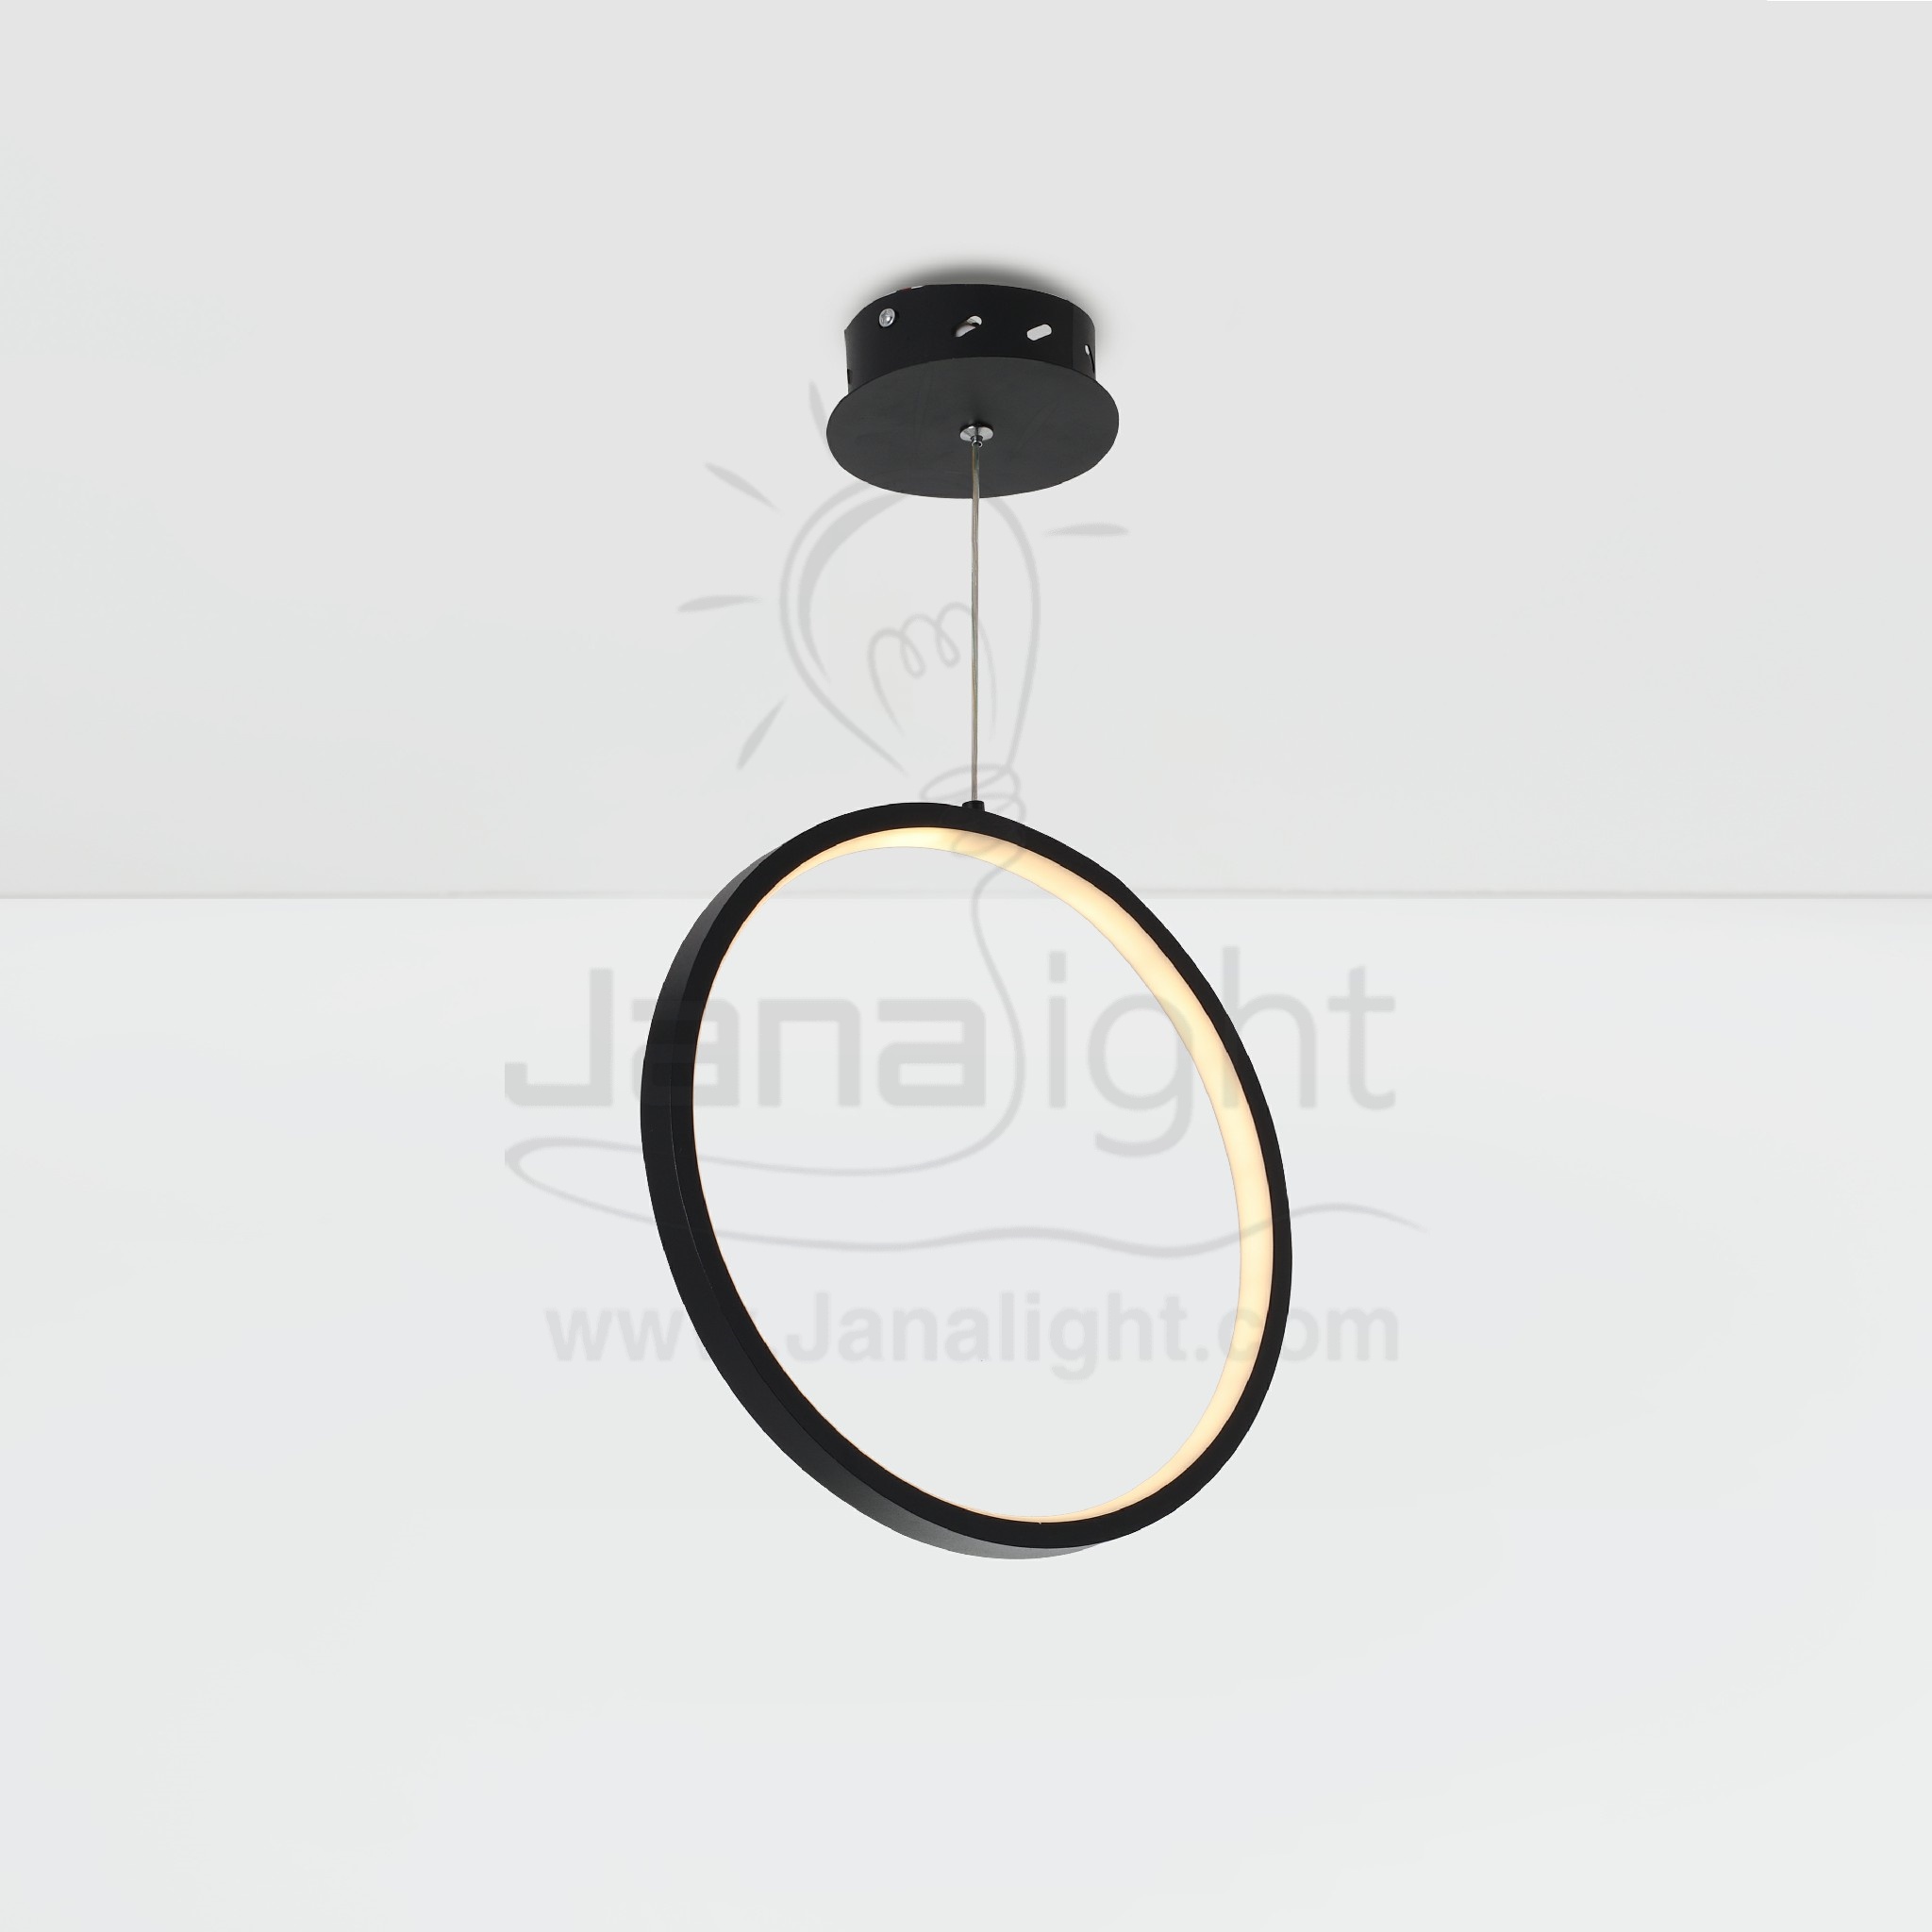 دلاية ليد رش شكل دائري اضاءة داخلي Modern luminaire hanglamp ceiling pendant led one black minimalist ring